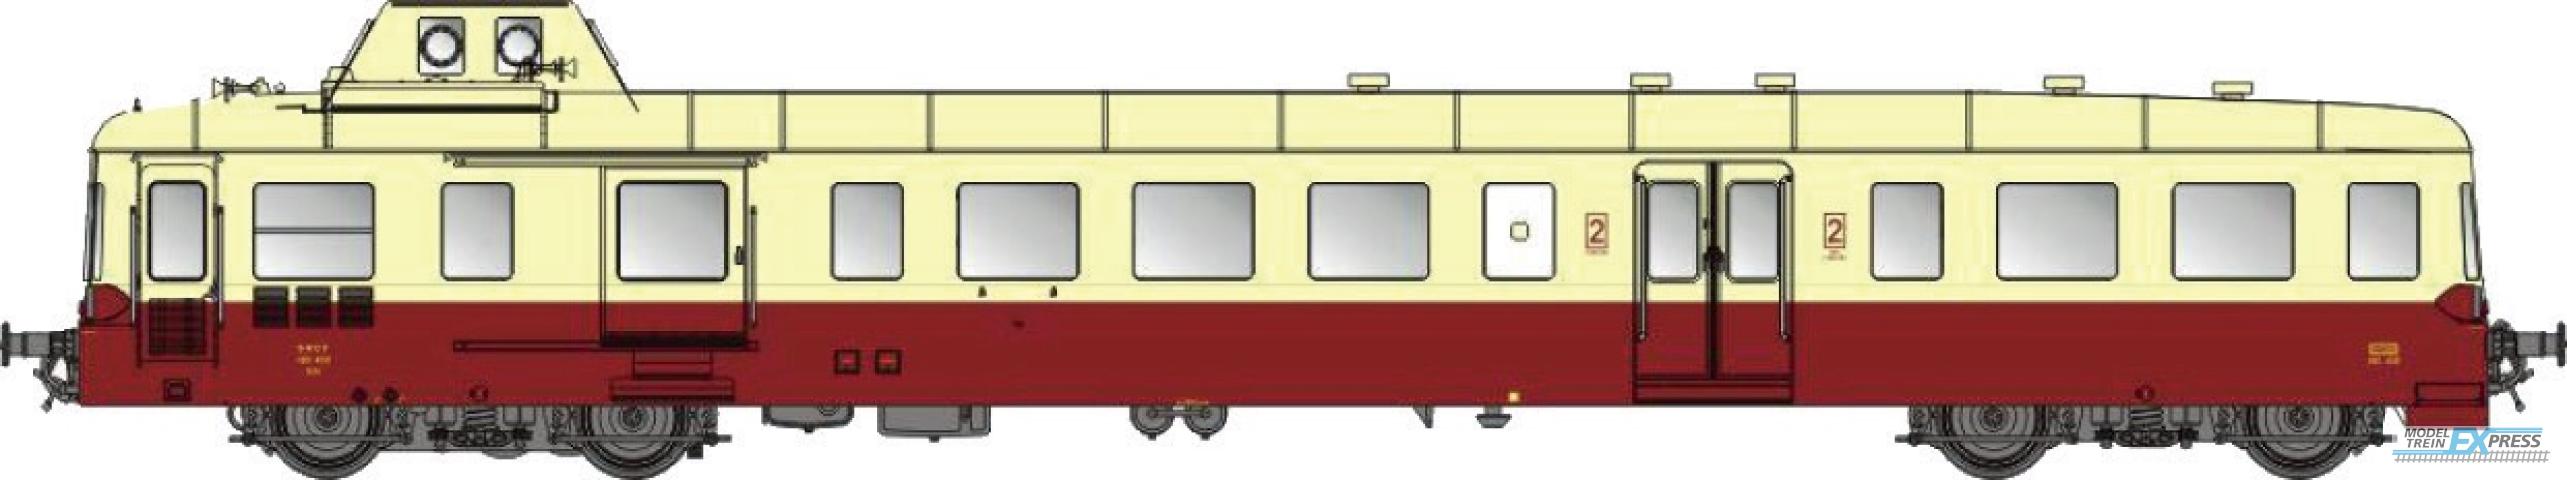 LS Models 10139S X 38XX, rood/creme, 2e klass, Bordeaux  /  Ep. IV  /  SNCF  /  HO  /  DC SOUND  /  1 P.